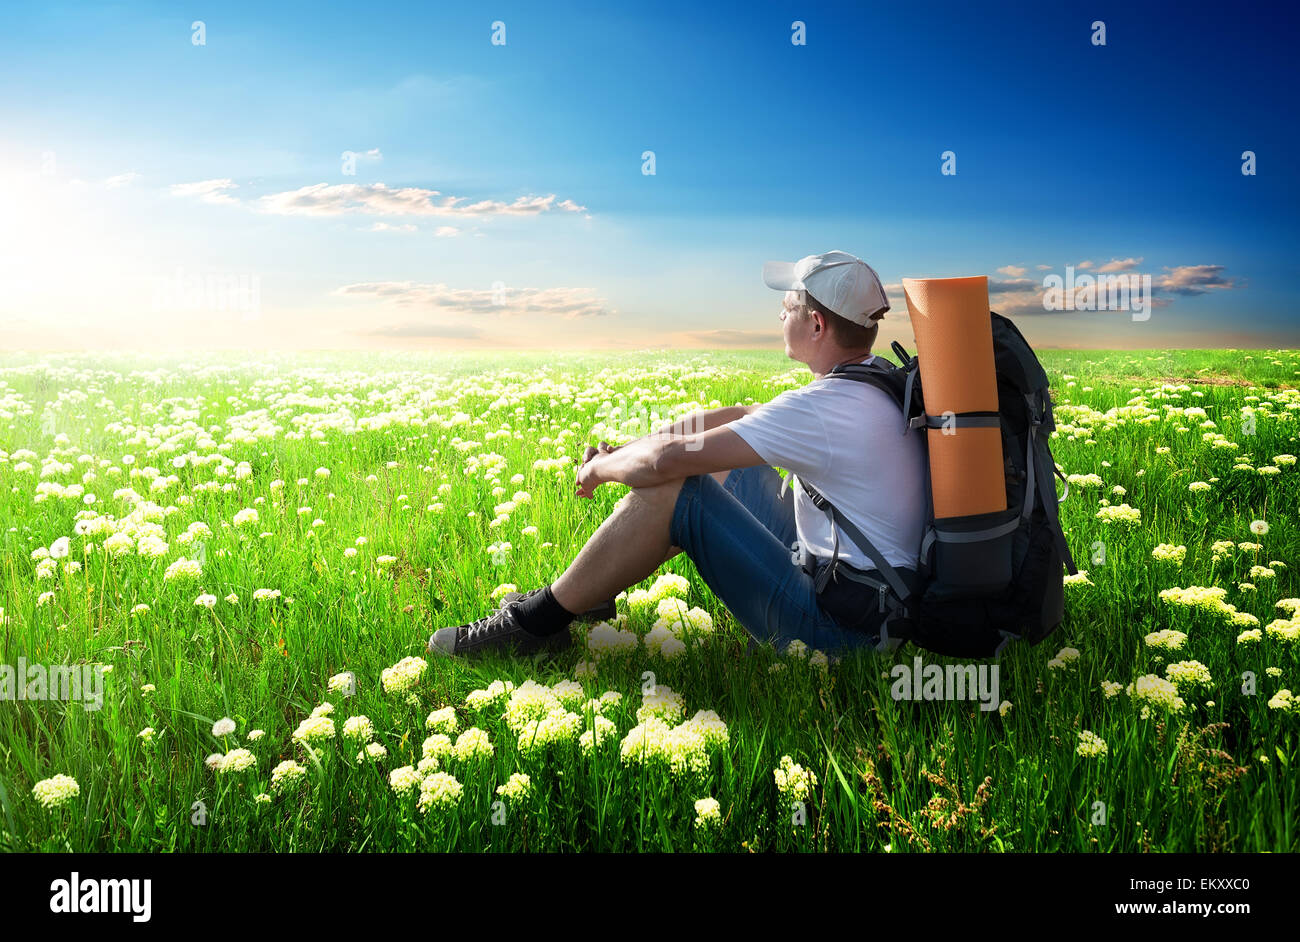 Tourist sitting on flower field at sunlight Stock Photo